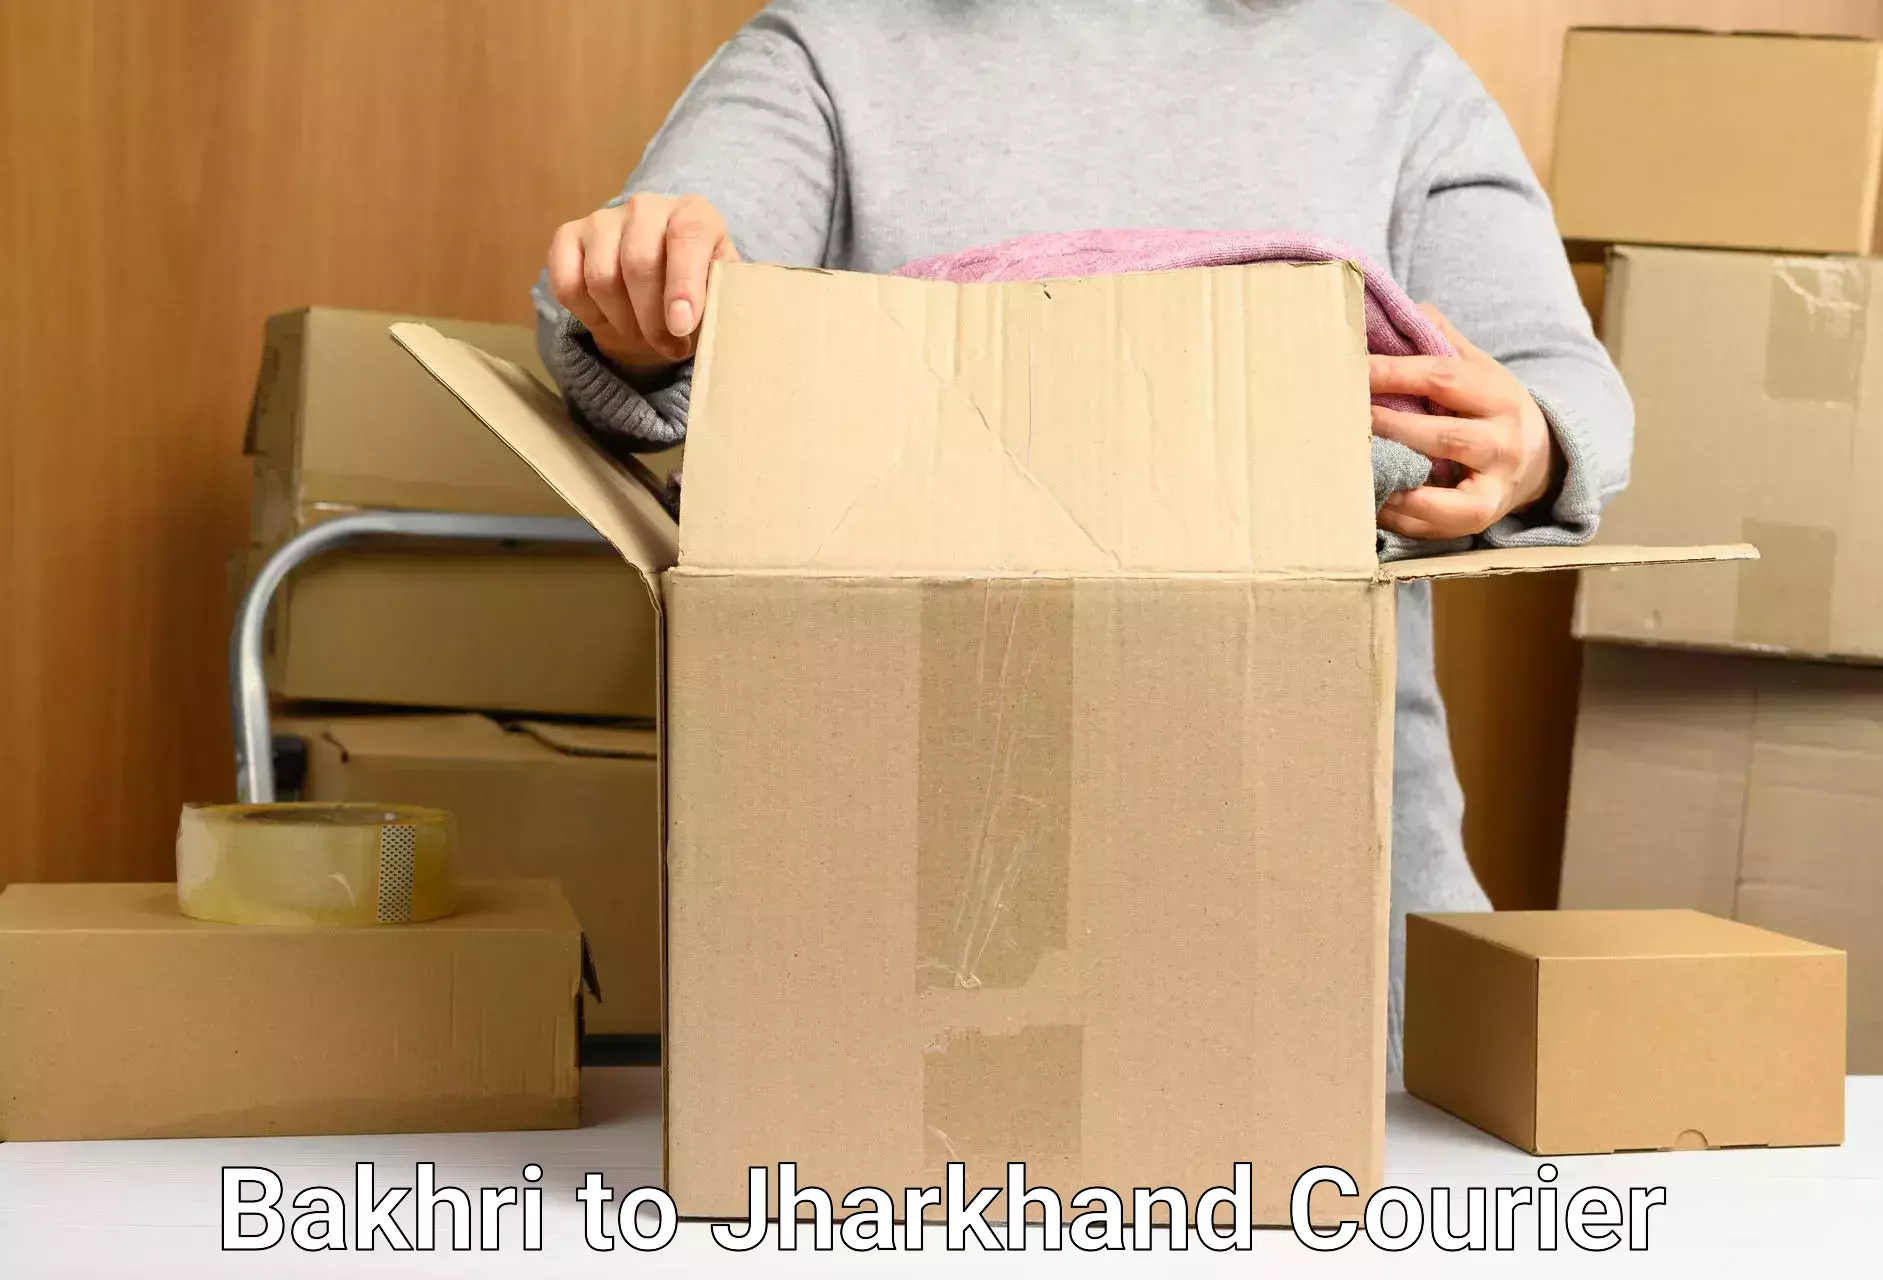 Custom courier packaging Bakhri to Padma Hazaribagh